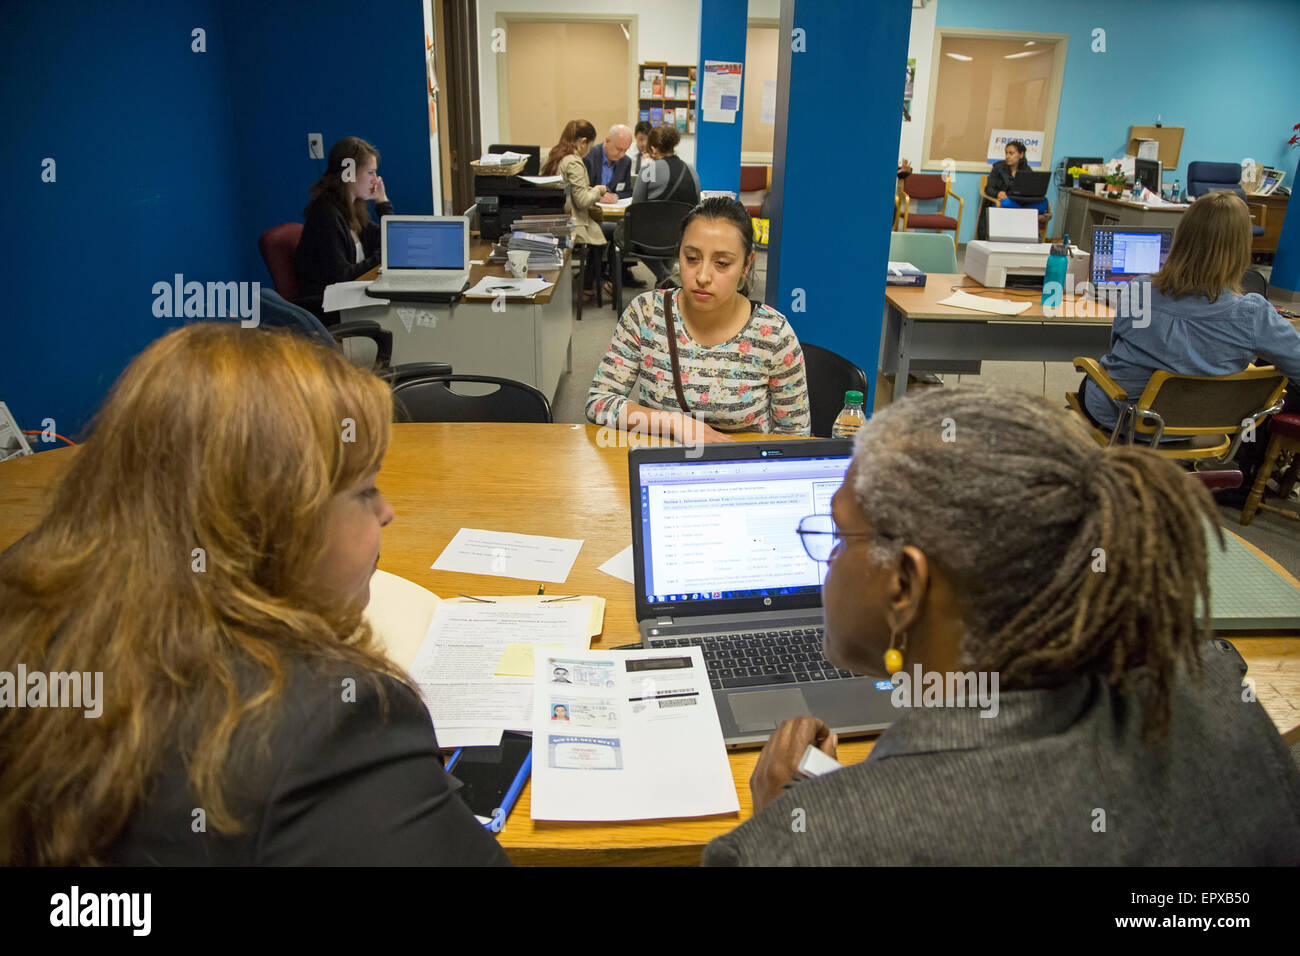 Detroit, Michigan - aide les immigrants avec leurs demandes de citoyenneté américaine. Banque D'Images